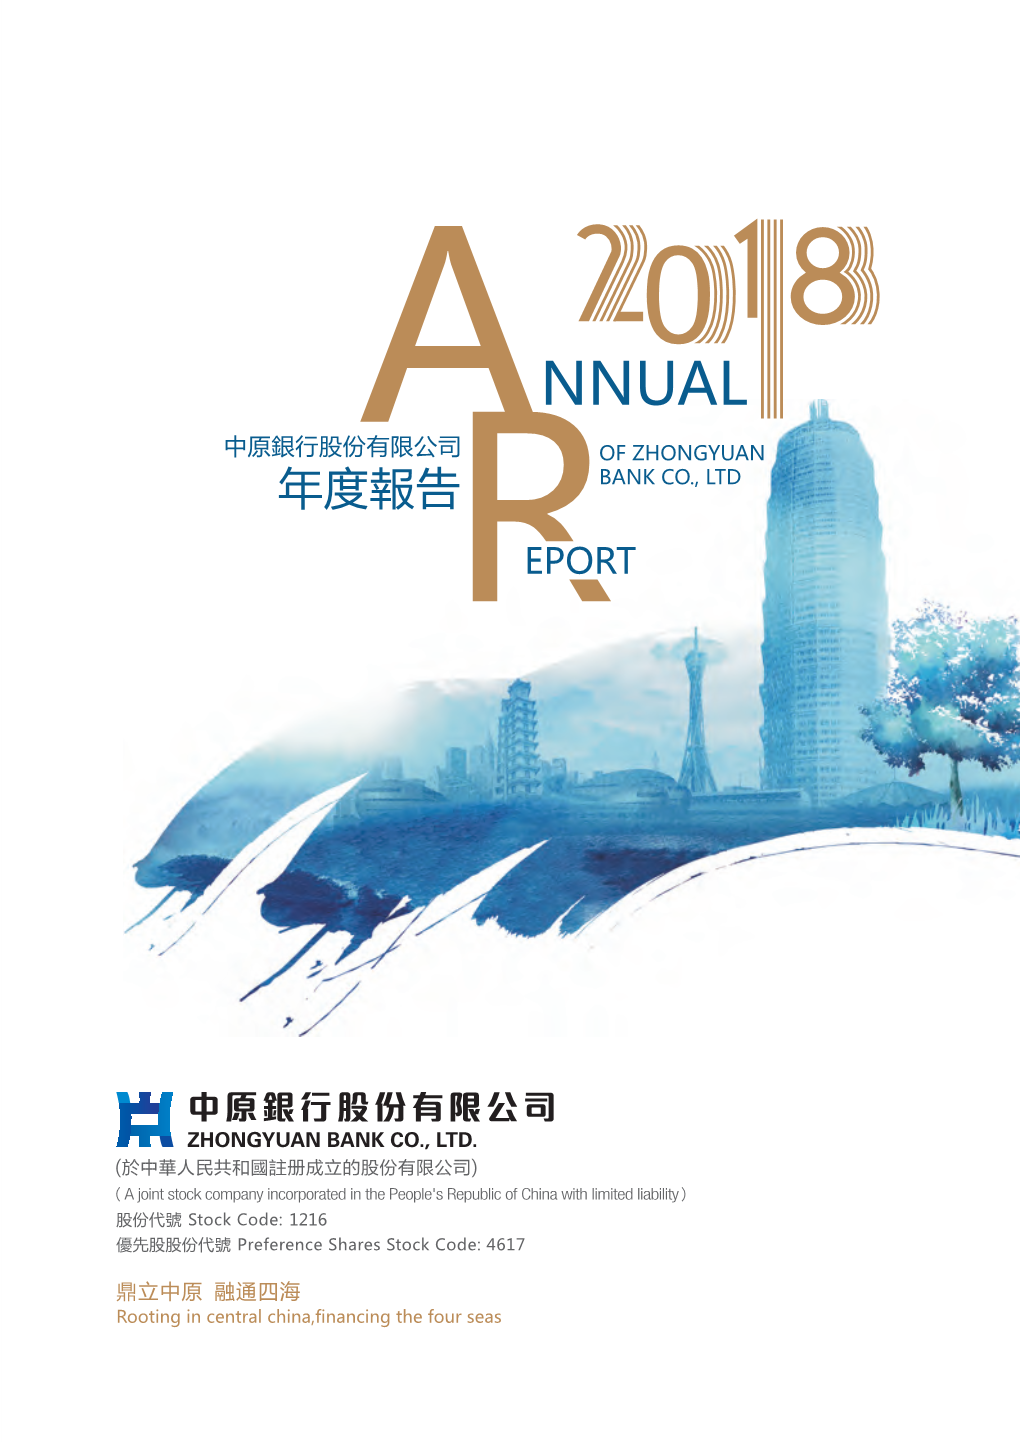 2018 Annual Report Zhongyuan Bank Co., Ltd